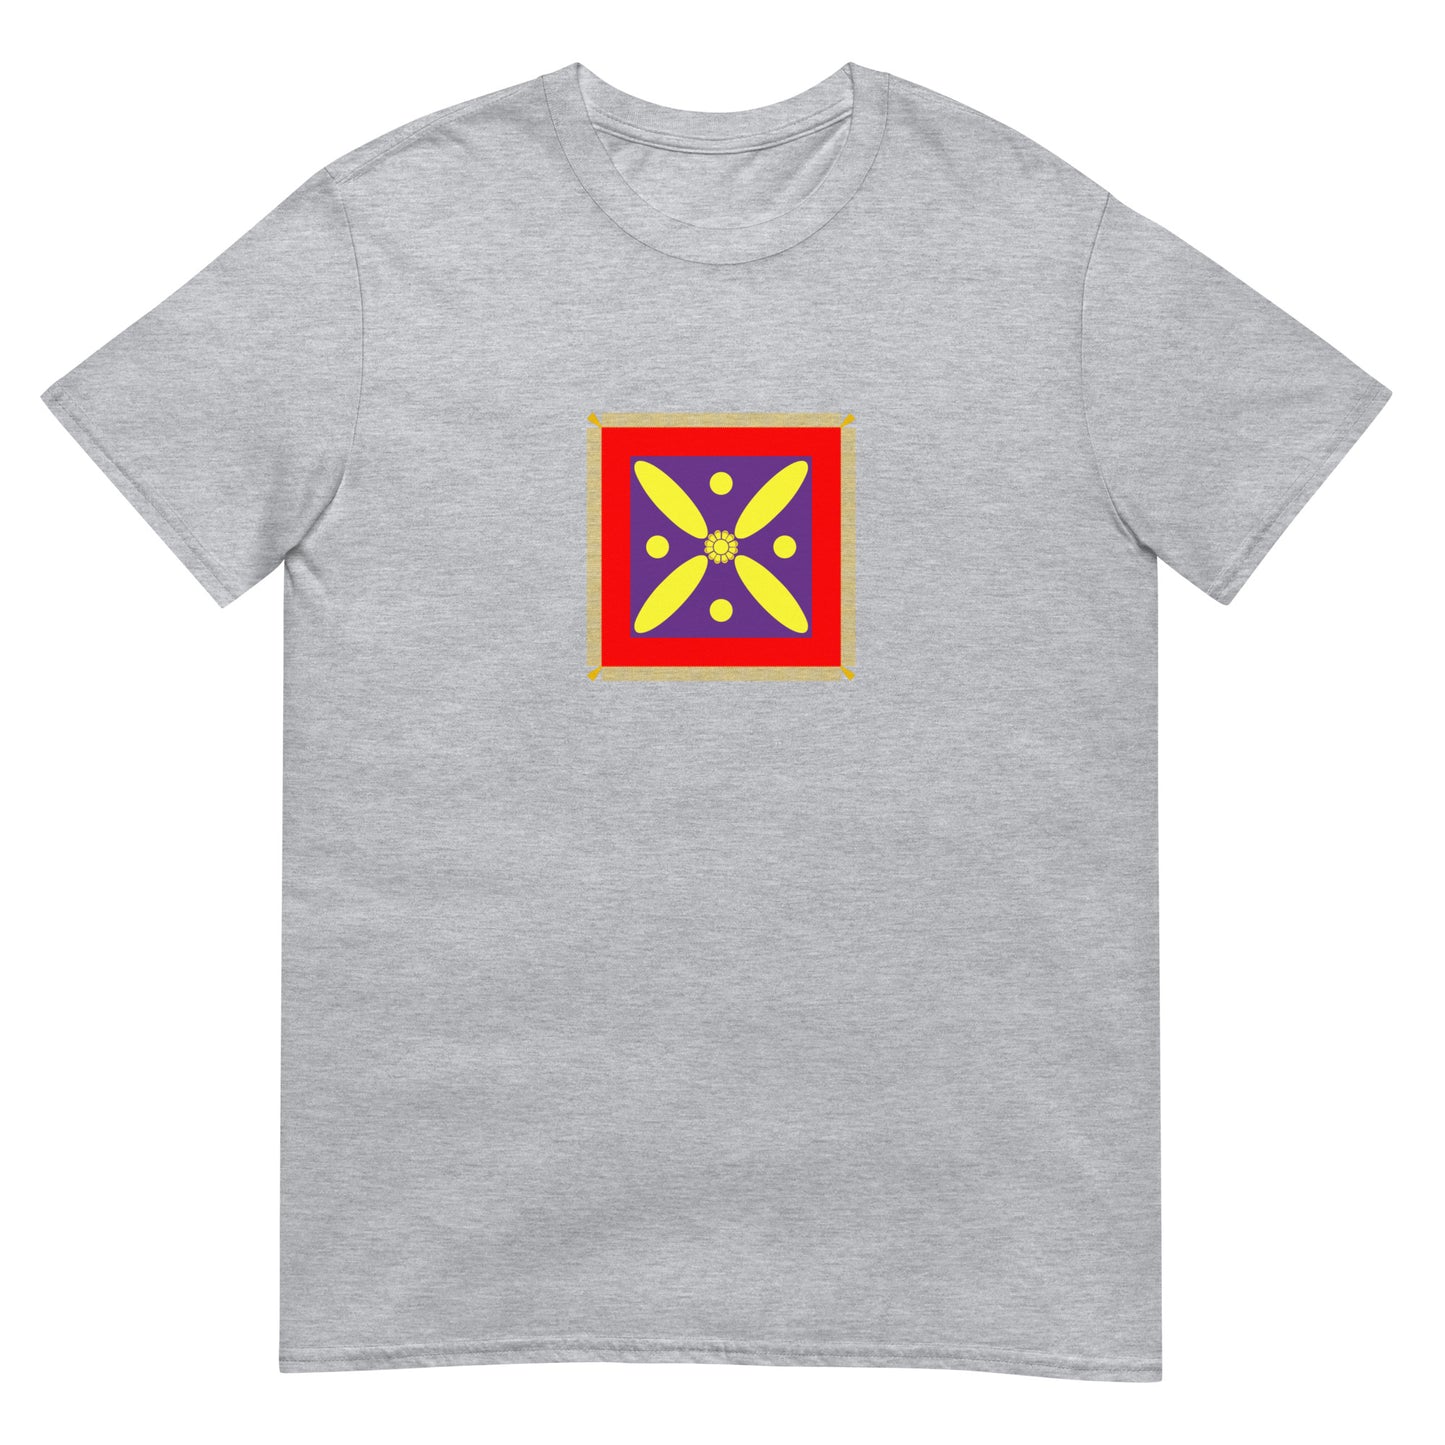 Iran - Sassanian Empire (224-651) | Iran Flag Interactive History T-Shirt